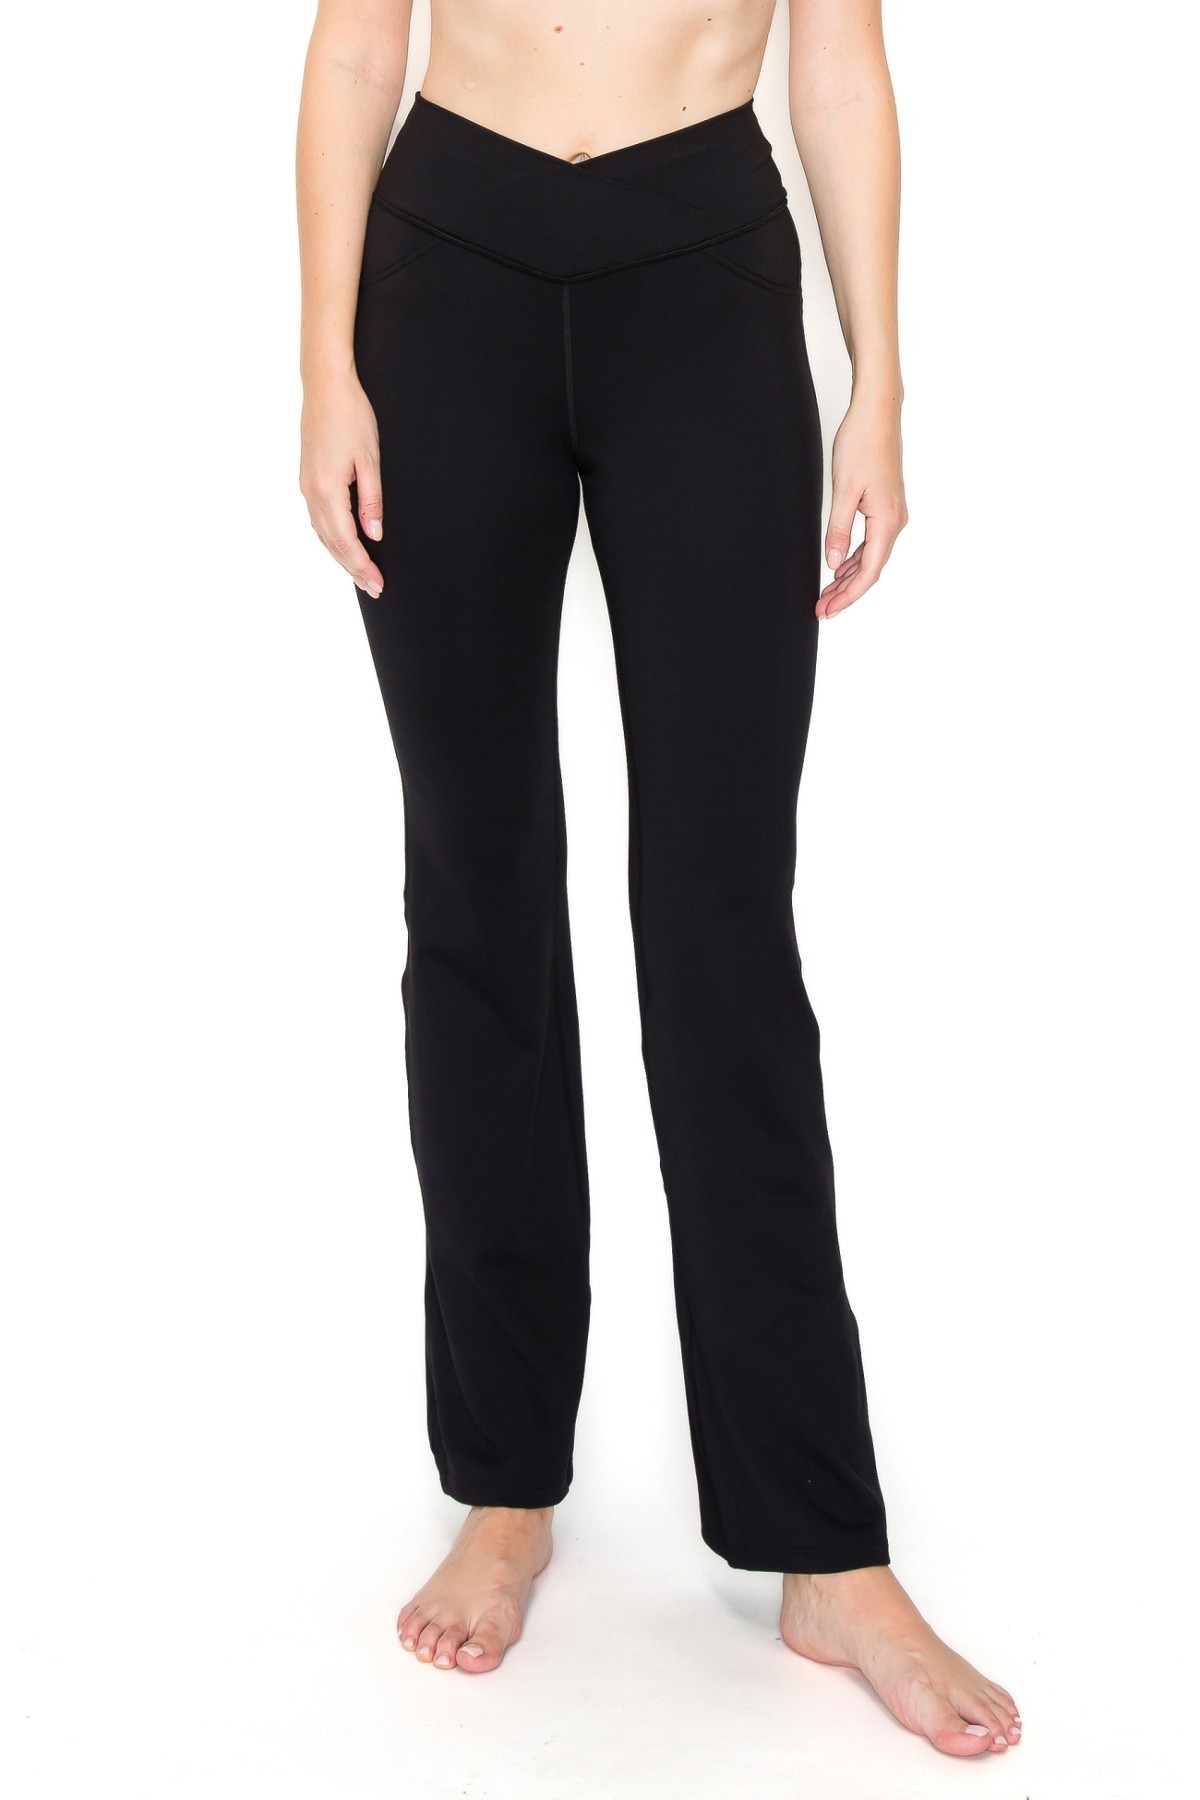 WHC V-Waist Mini Flare Yoga Pants - Black